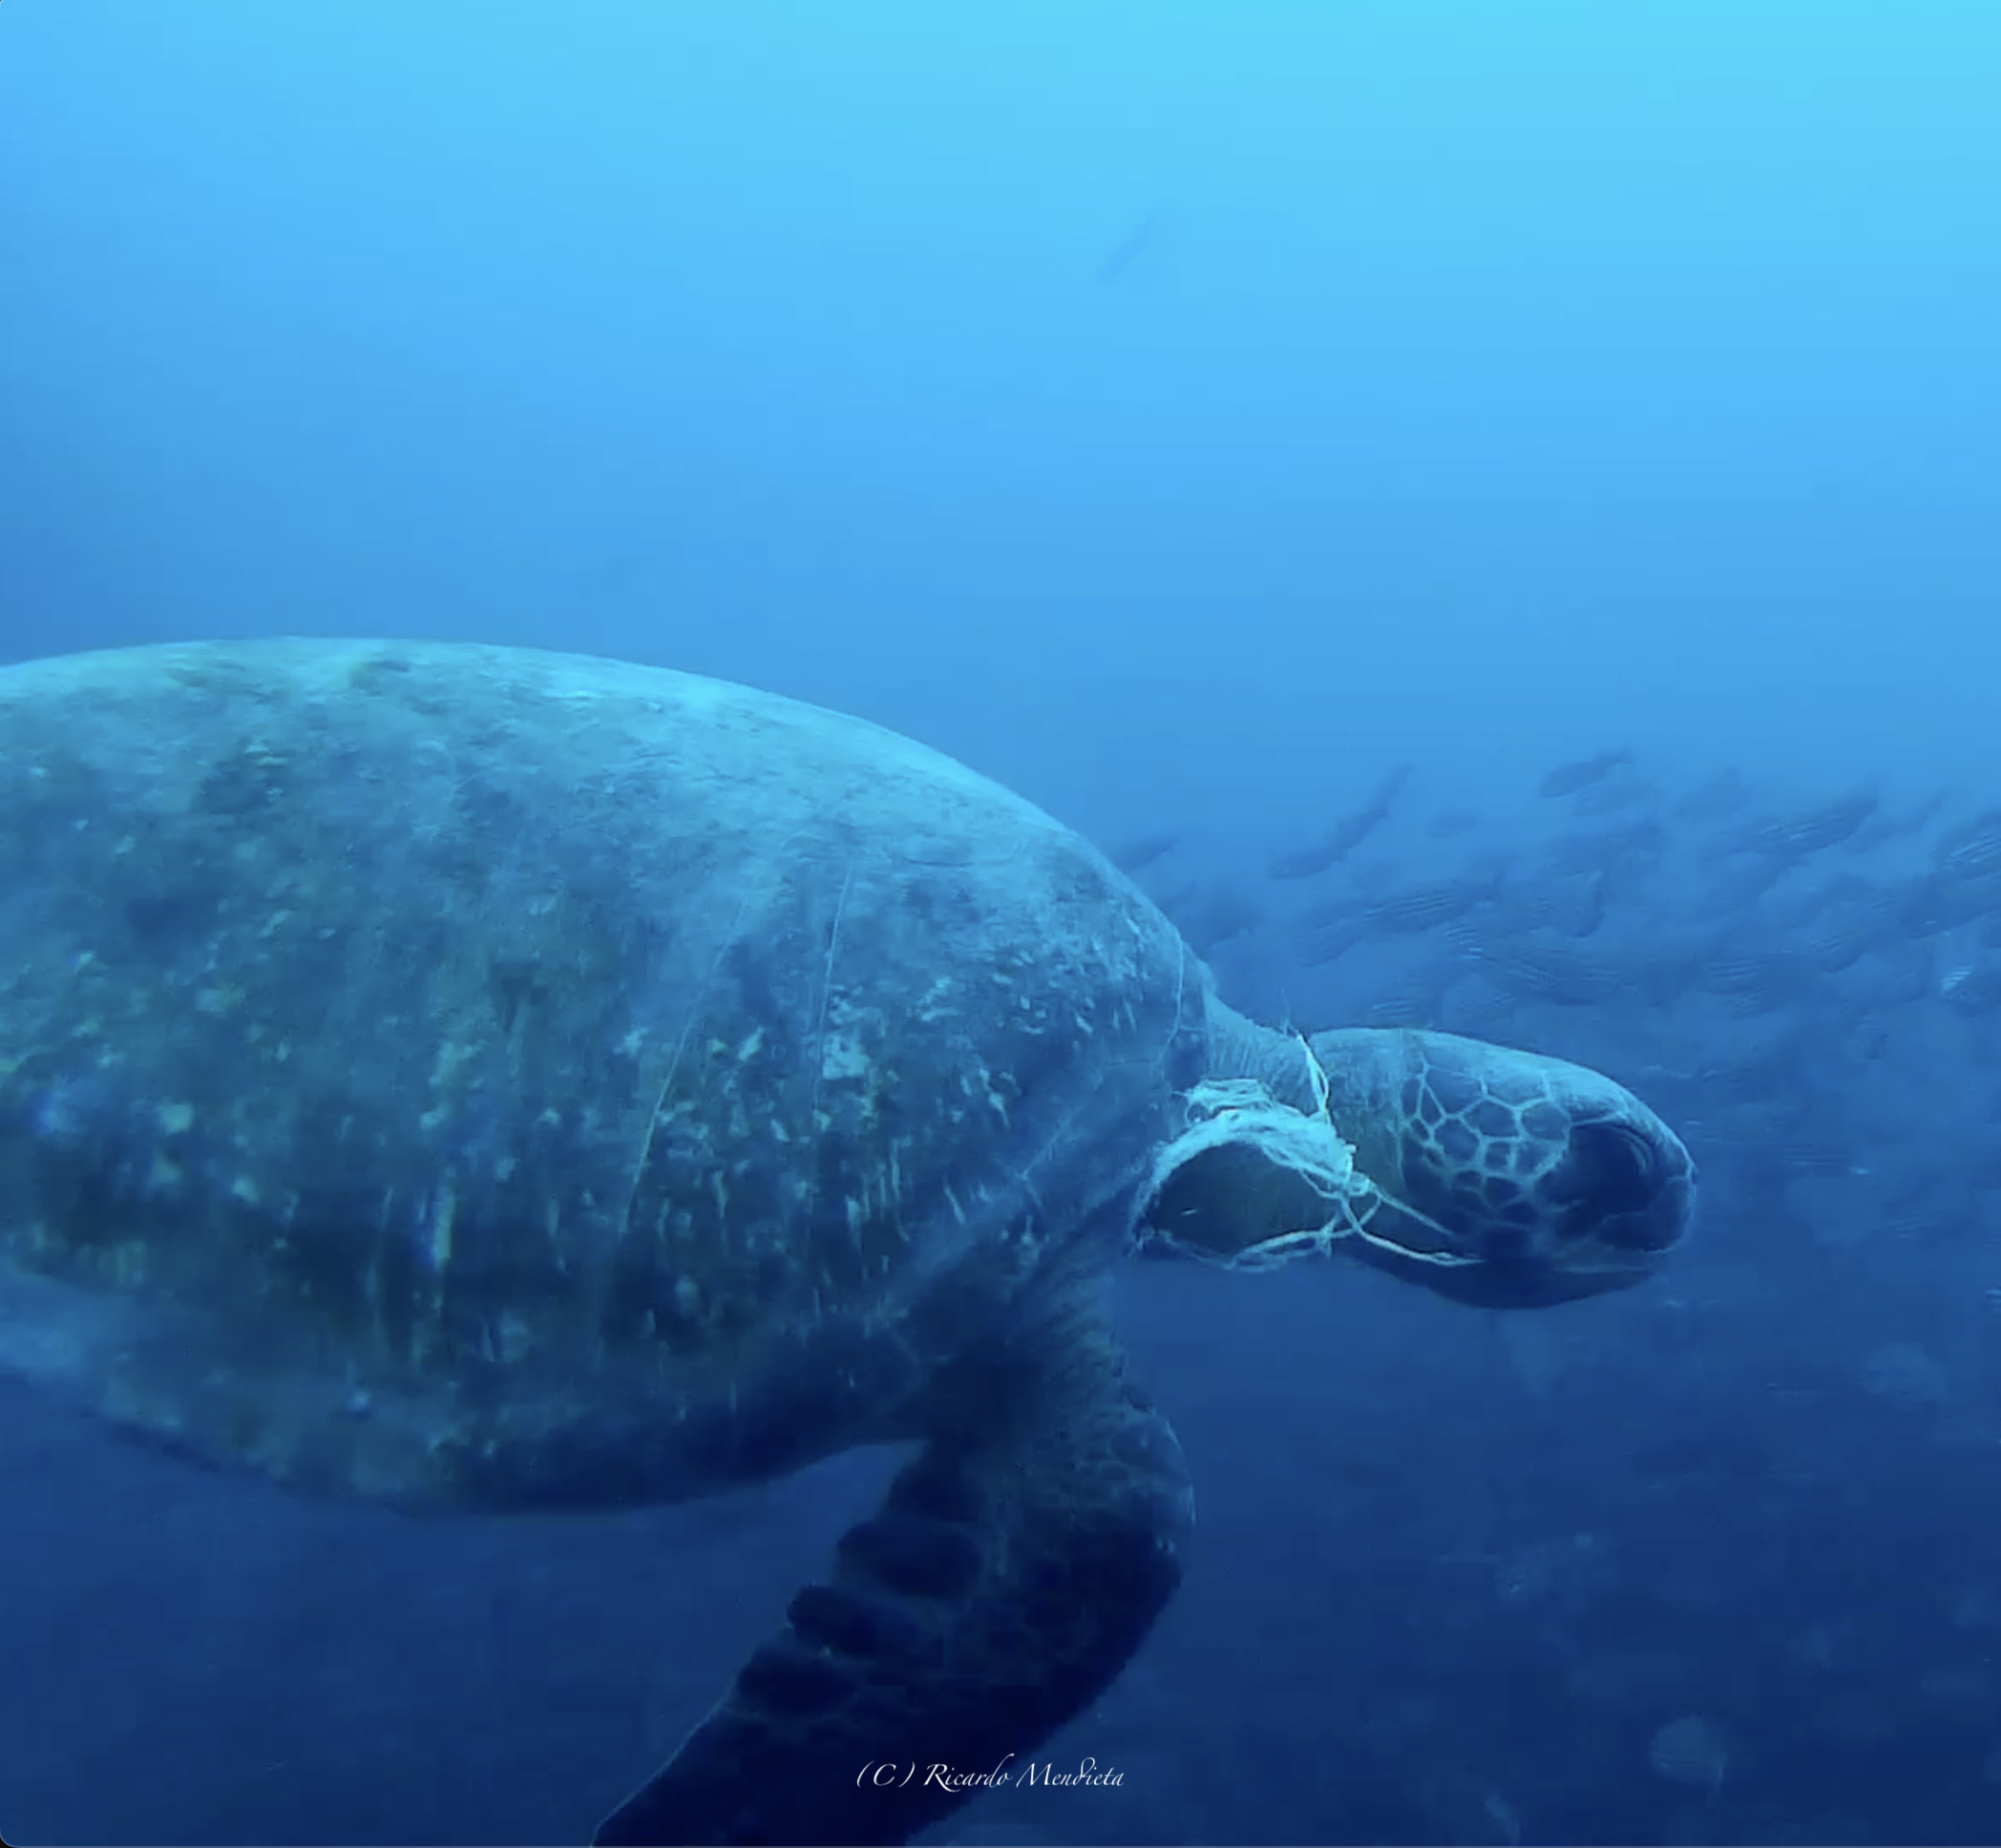 Las tortugas marinas ingieren y se enredan con bolsas plásticas. Foto: cortesía Ricardo Mendieta